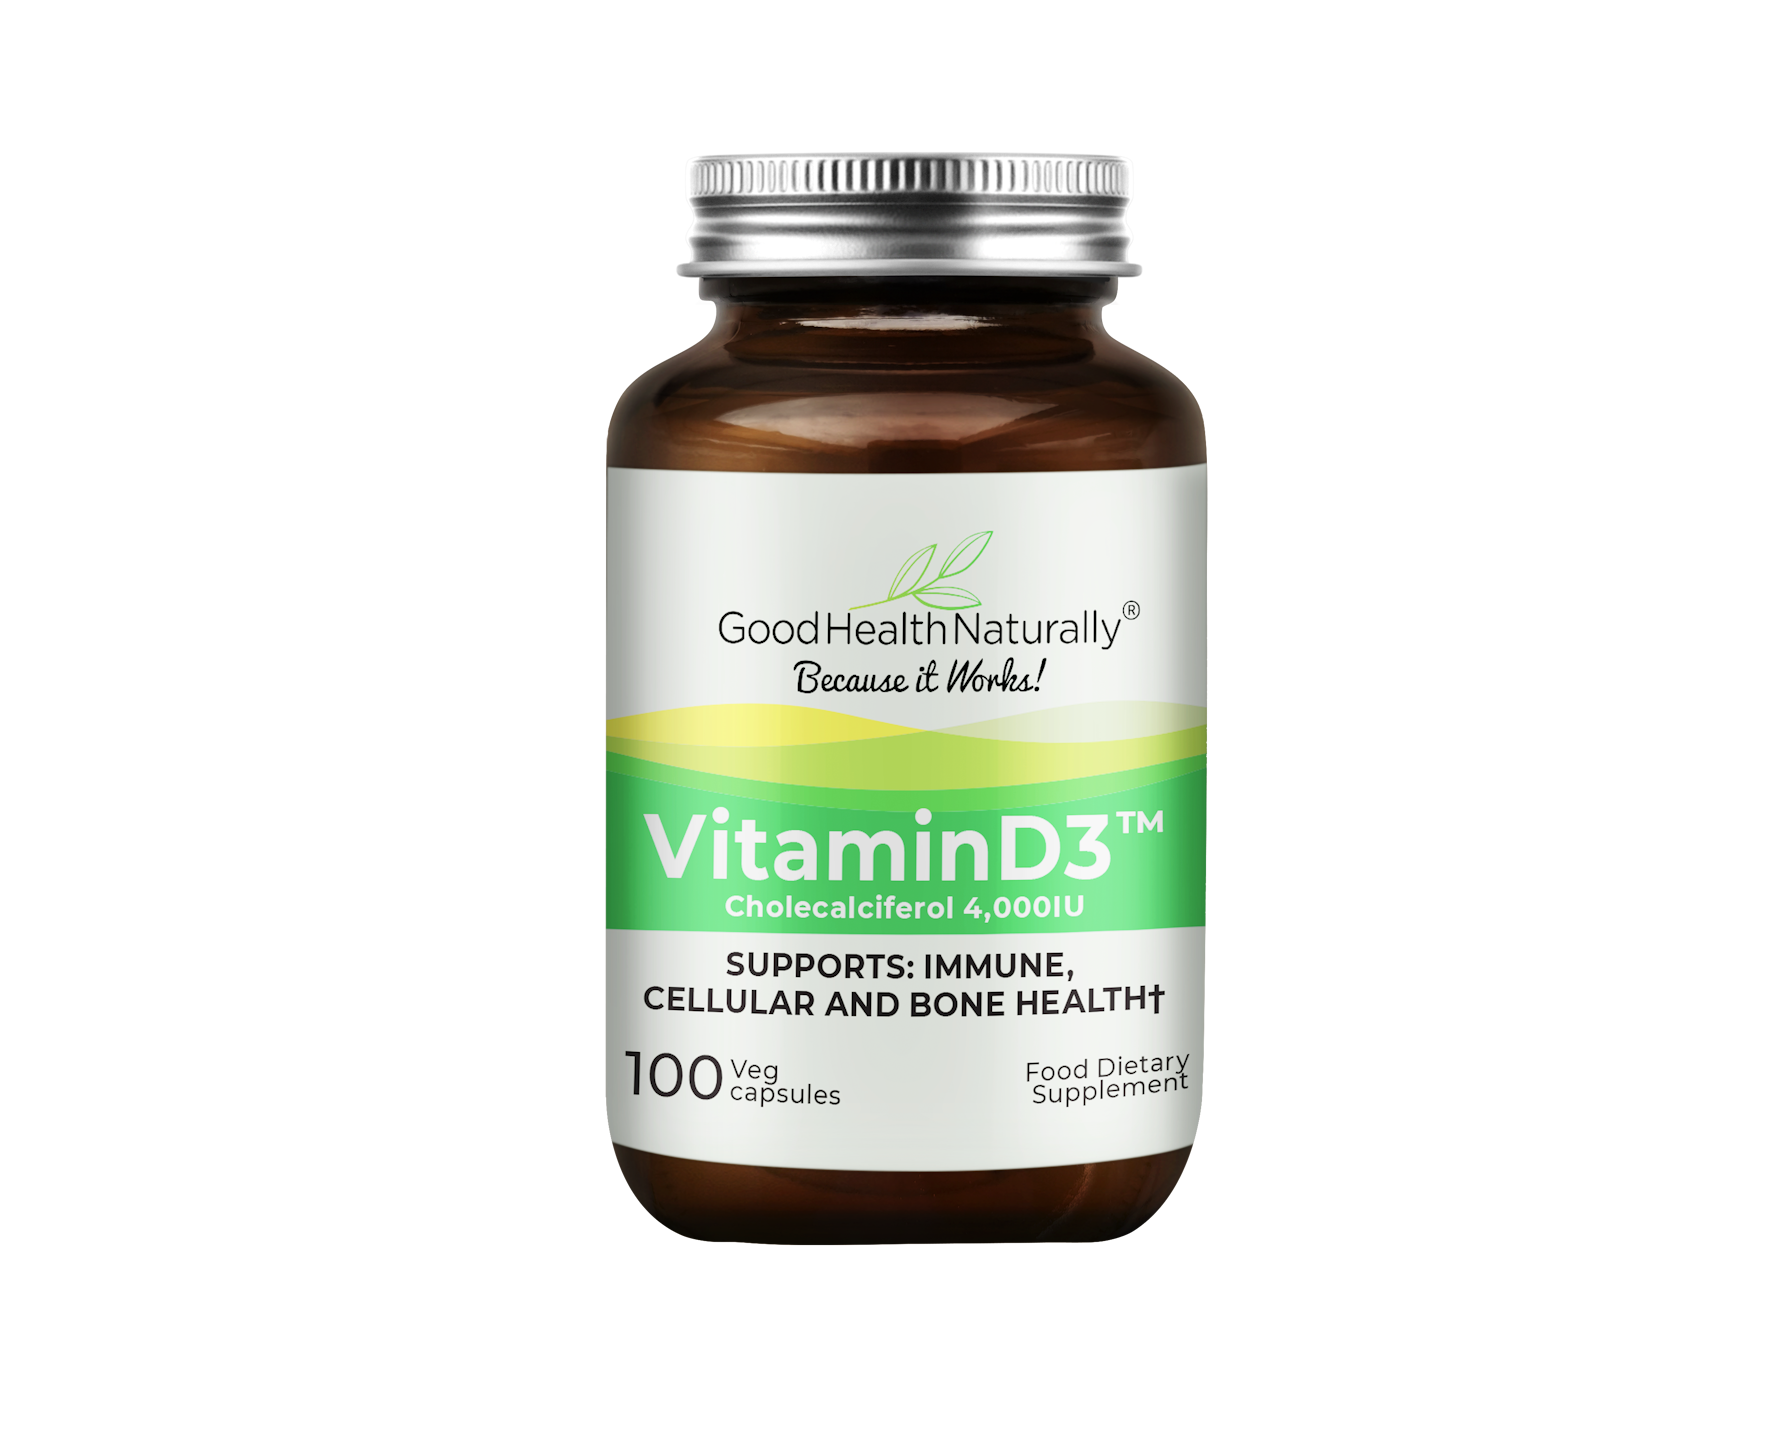 VitaminD3 supplement